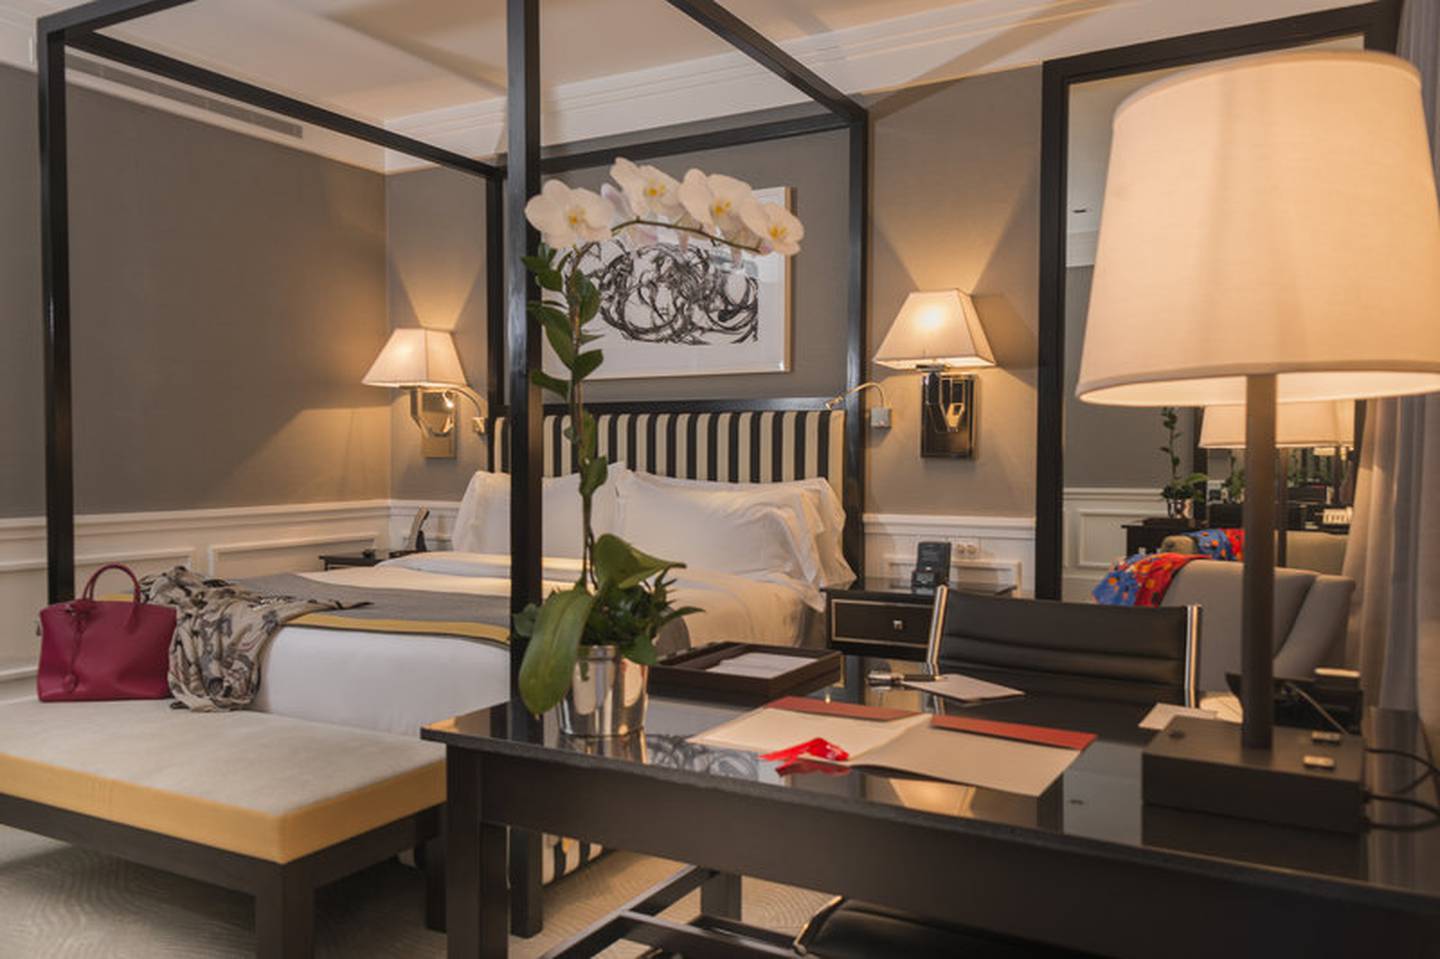 La habitación deluxe premium, con una cama King, resulta una de las más costosas en el hotel ubicado en La Castellana / Foto Hotel Cayena